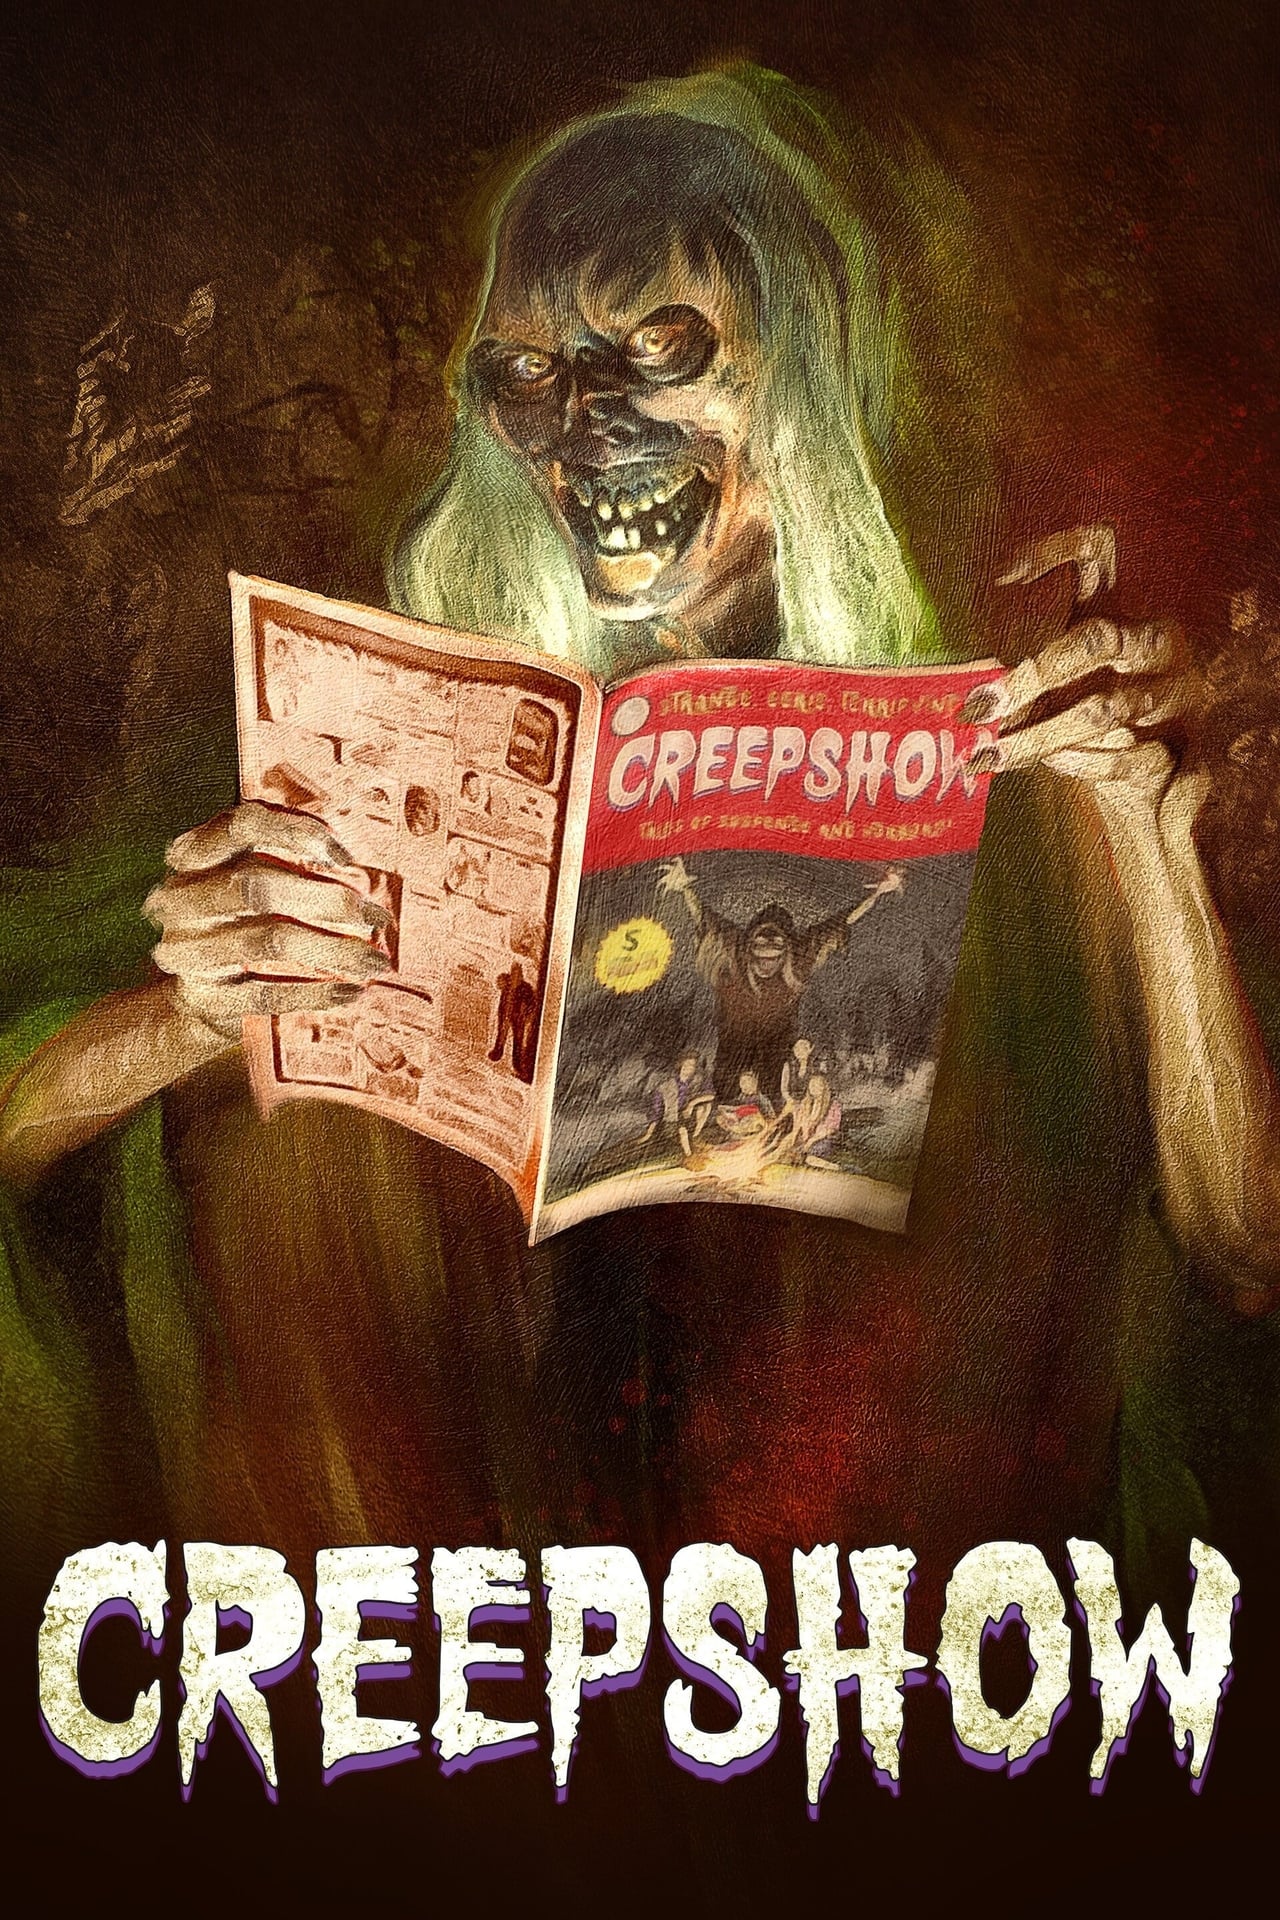 Creepshow (season 3)